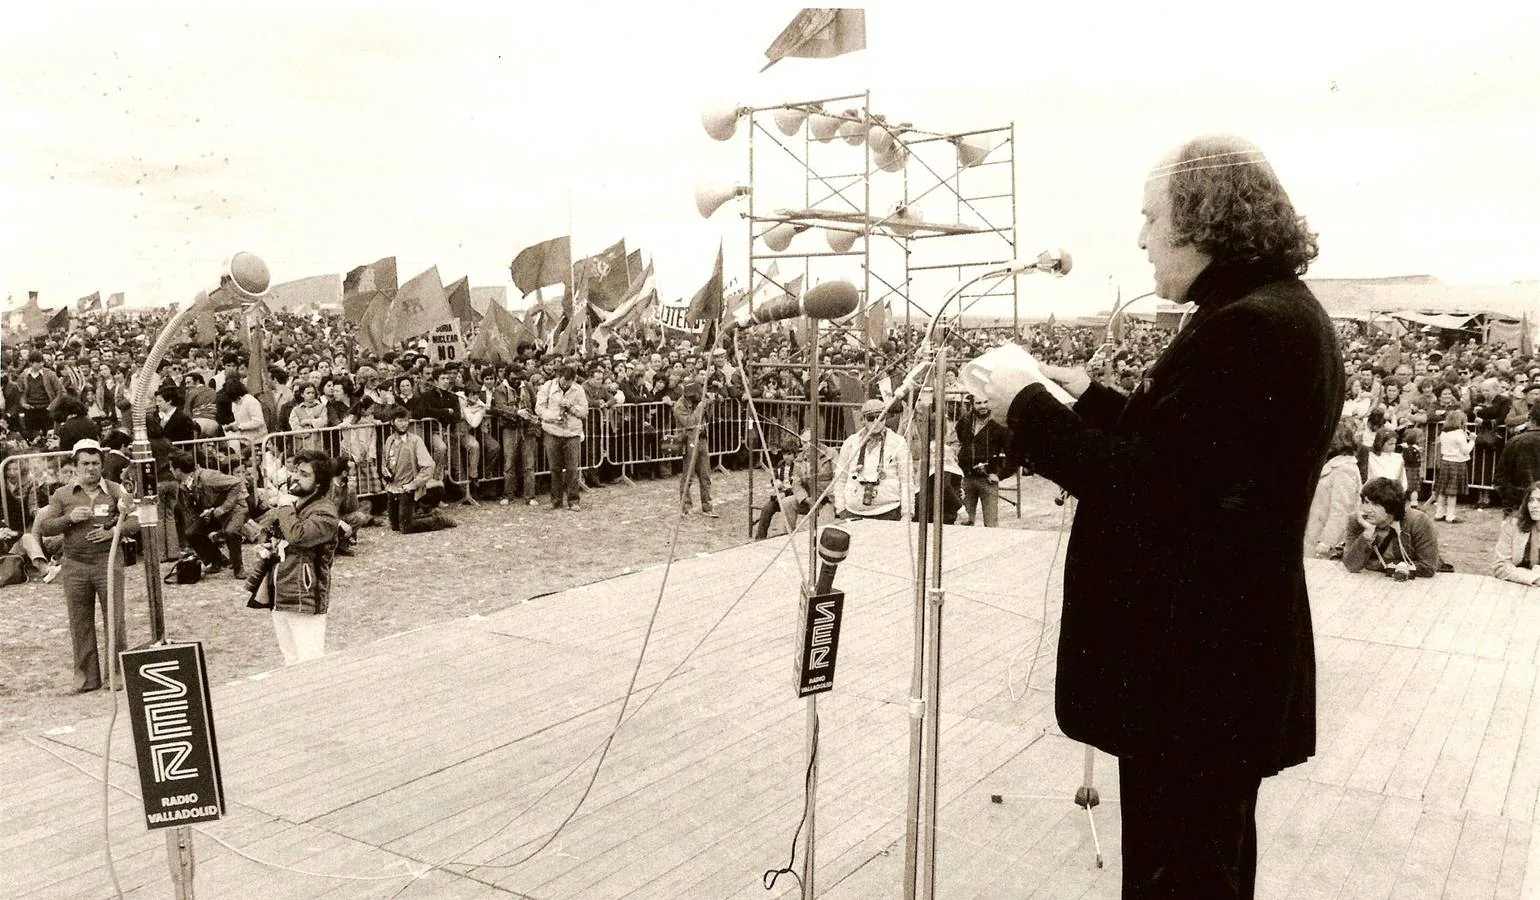 El poeta leonés Luis López Alvarez durante su discurso en la celebracion de Villalar en 1979, leyendo el manifiesto pactado por los políticos.